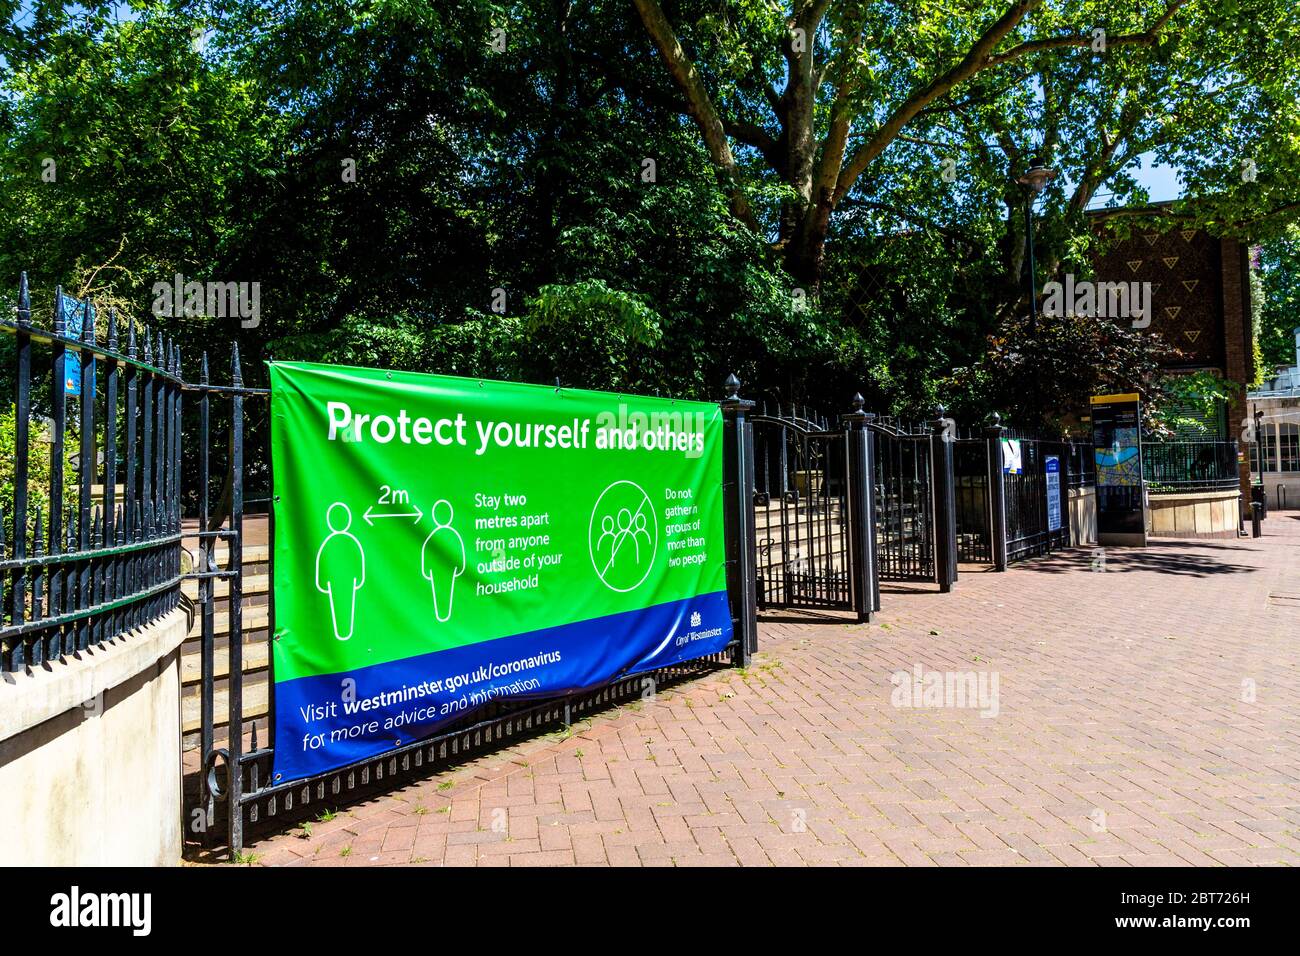 21 May 2020, London, UK - Schild an den Toren der Victoria Embankment Gardens, um Menschen mit einer Entfernung von 2 Metern daran zu erinnern, die Regierungsanweisungen zur Verhinderung der Ausbreitung des Coronavirus während der Pandemiesperre zu befolgen Stockfoto